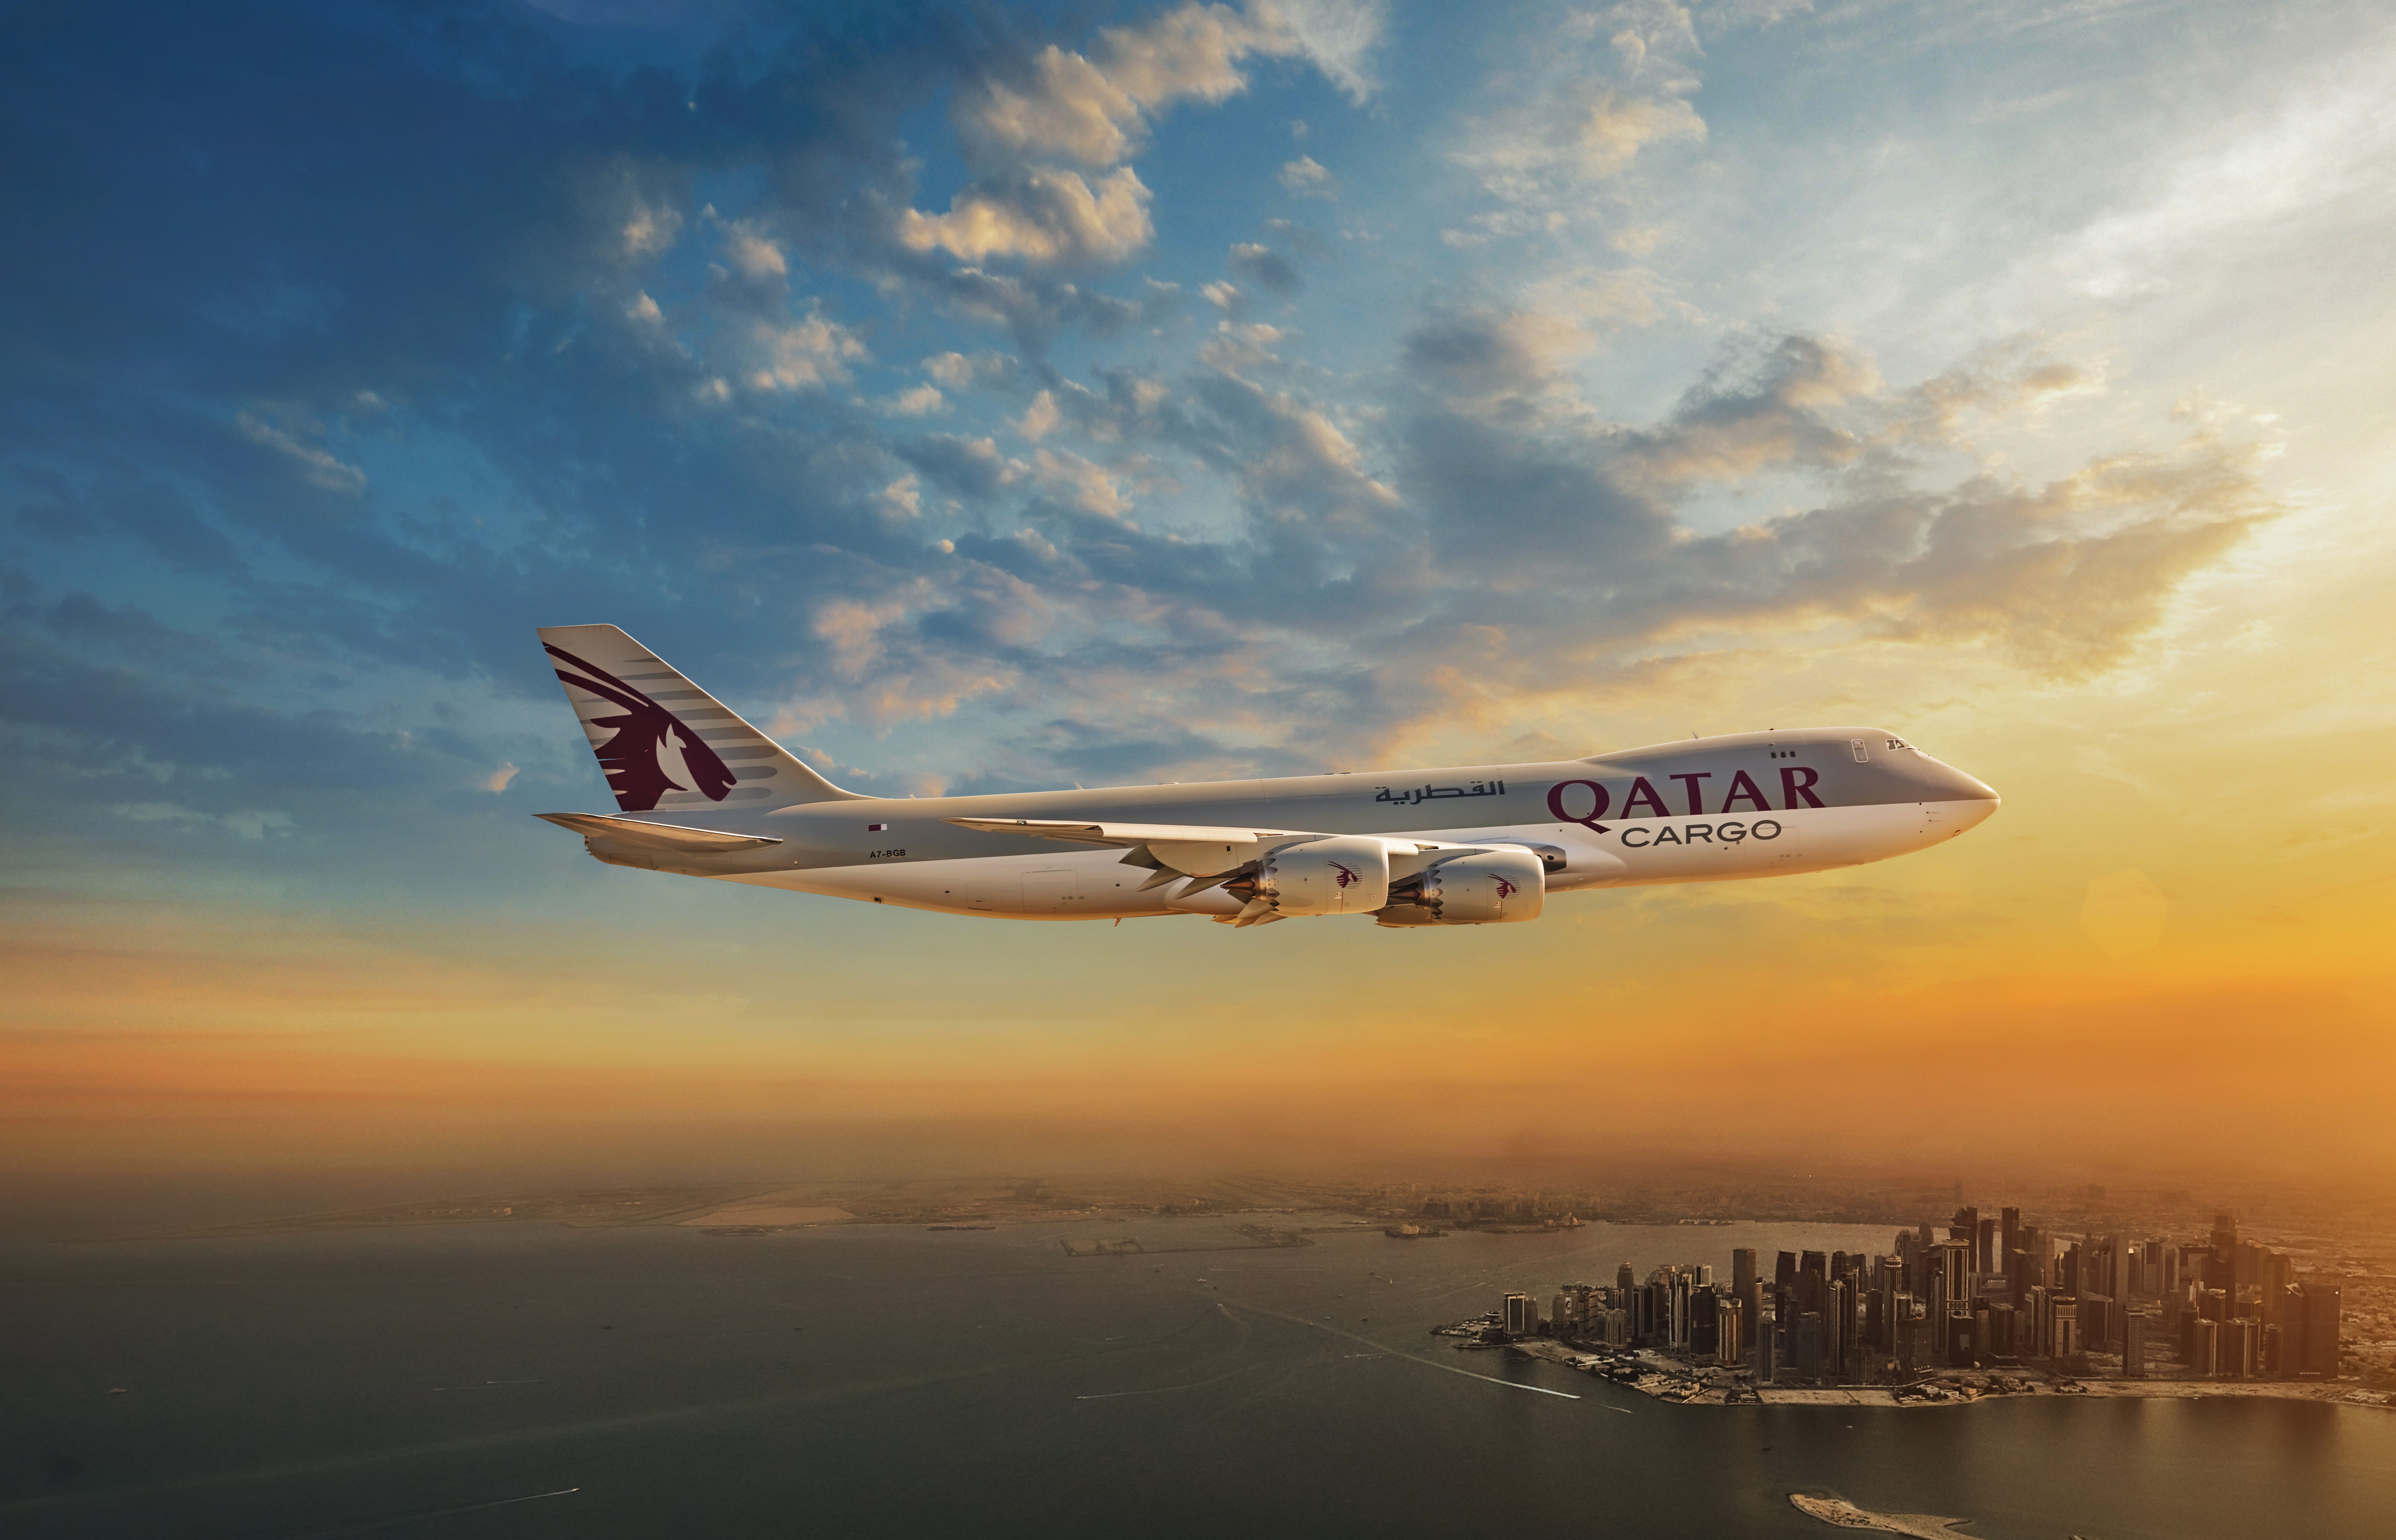 Qatar Airways Cargo mustert letzte Boeing 747F aus